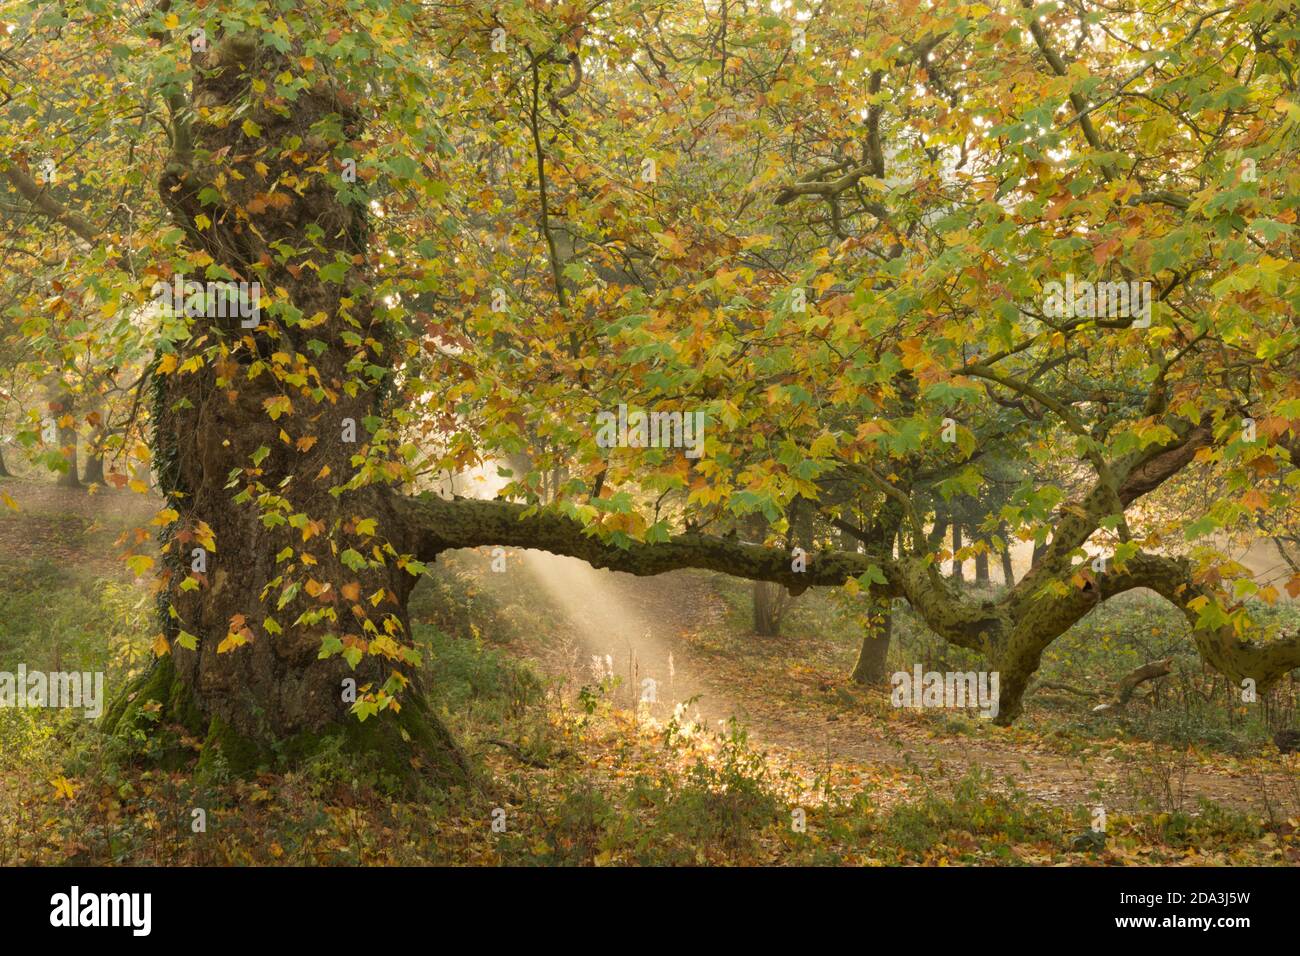 le soleil traverse la brume avec un London plane Tree à Cowdray Park, Midhurst, Sussex, UK London plane, Platanus × acerifolia, novembre Banque D'Images